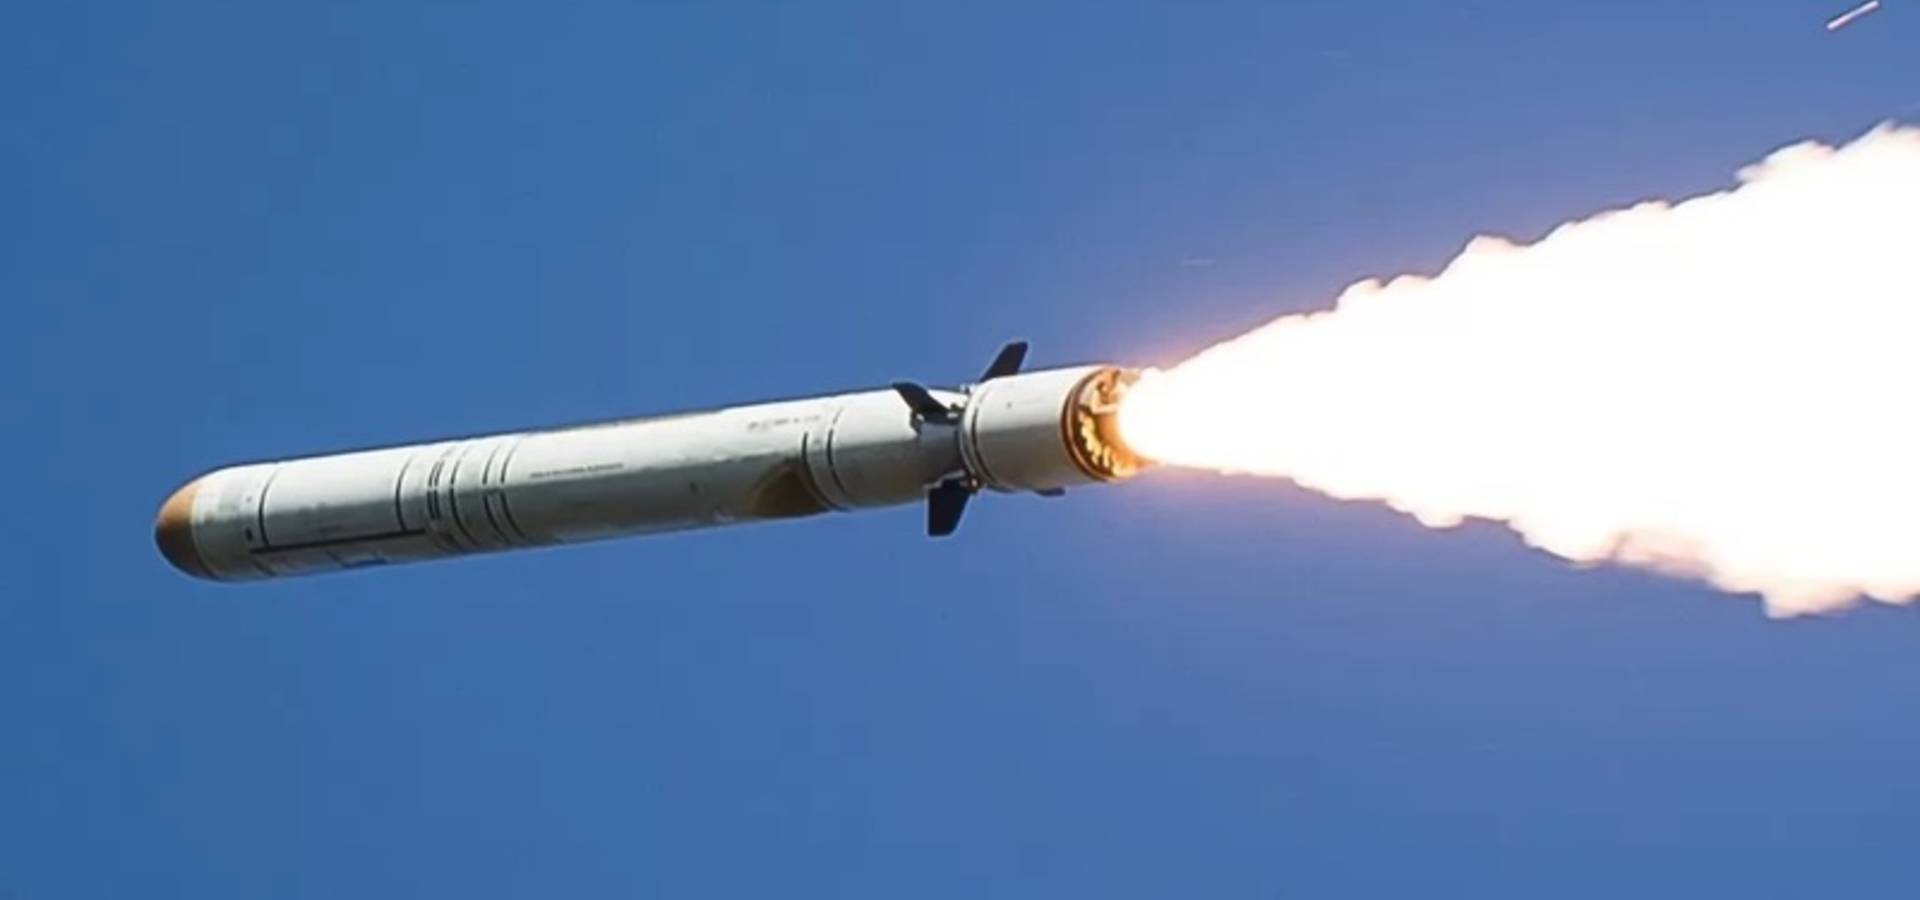 Вчорашній запуск восьми ракет по Україні коштував окупантам майже 100 мільйонів доларів